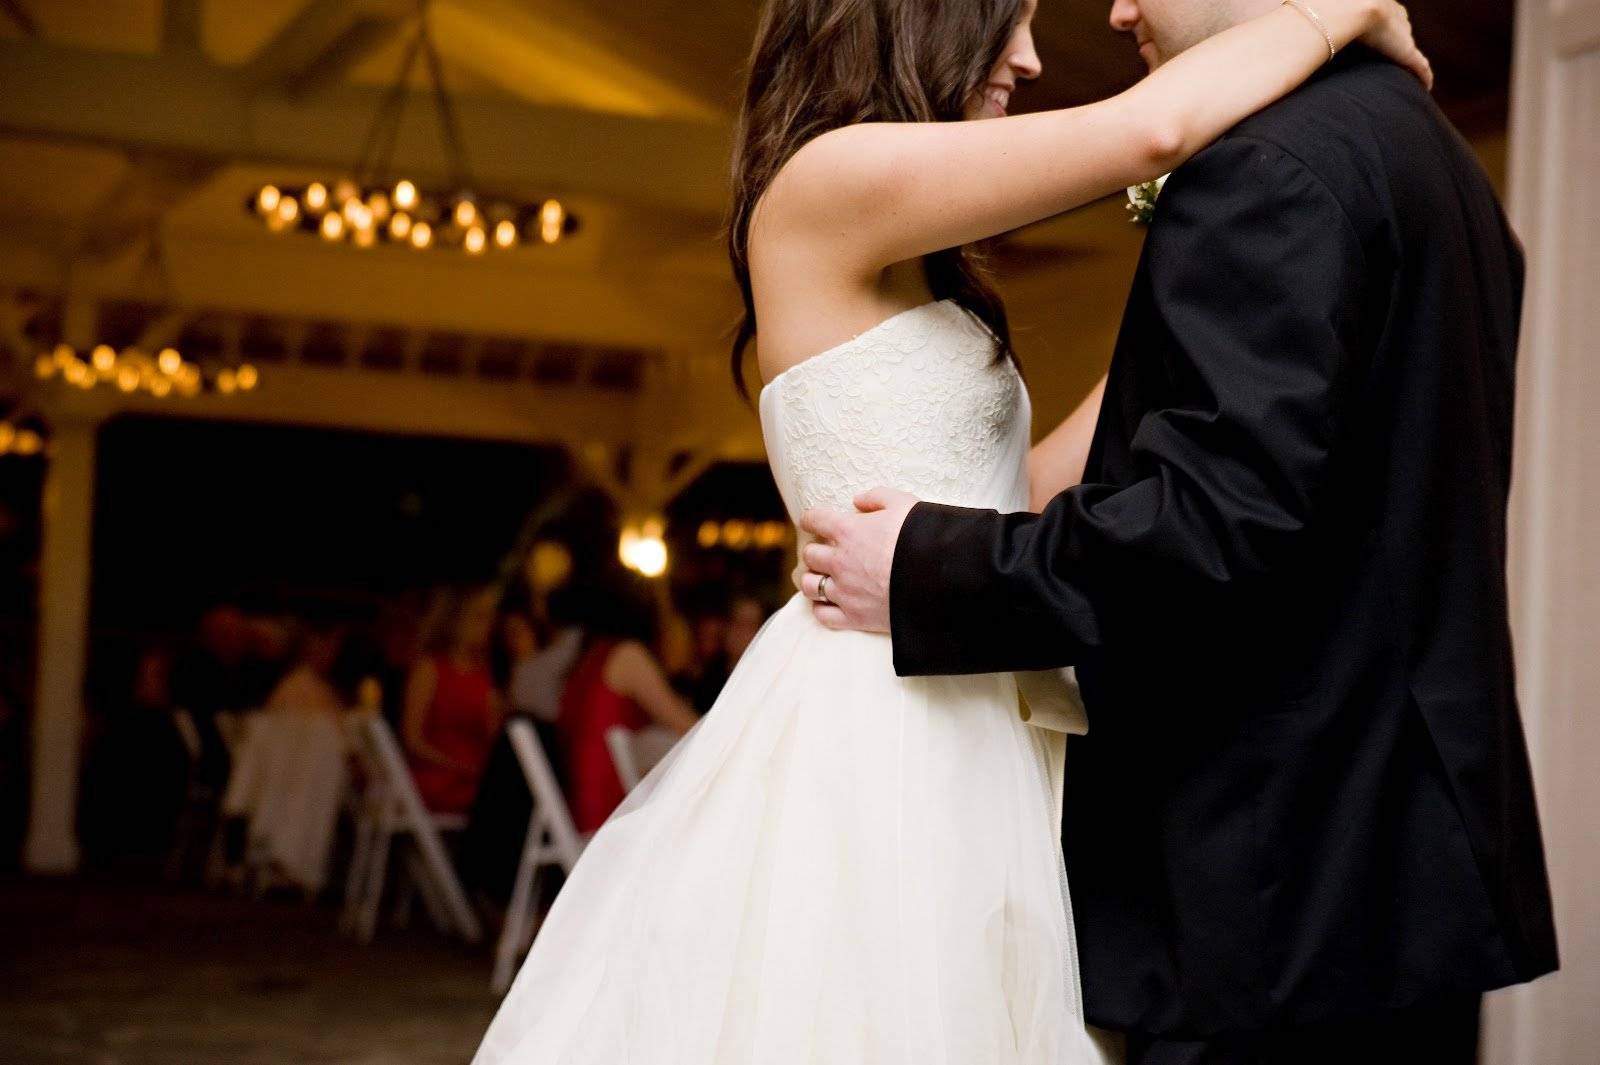 Танец жениха и невесты на свадьбе песни. Свадебный танец. Свадебный танец жениха и невесты. Танец жениха и невесты на свадьбе. Медленный танец.